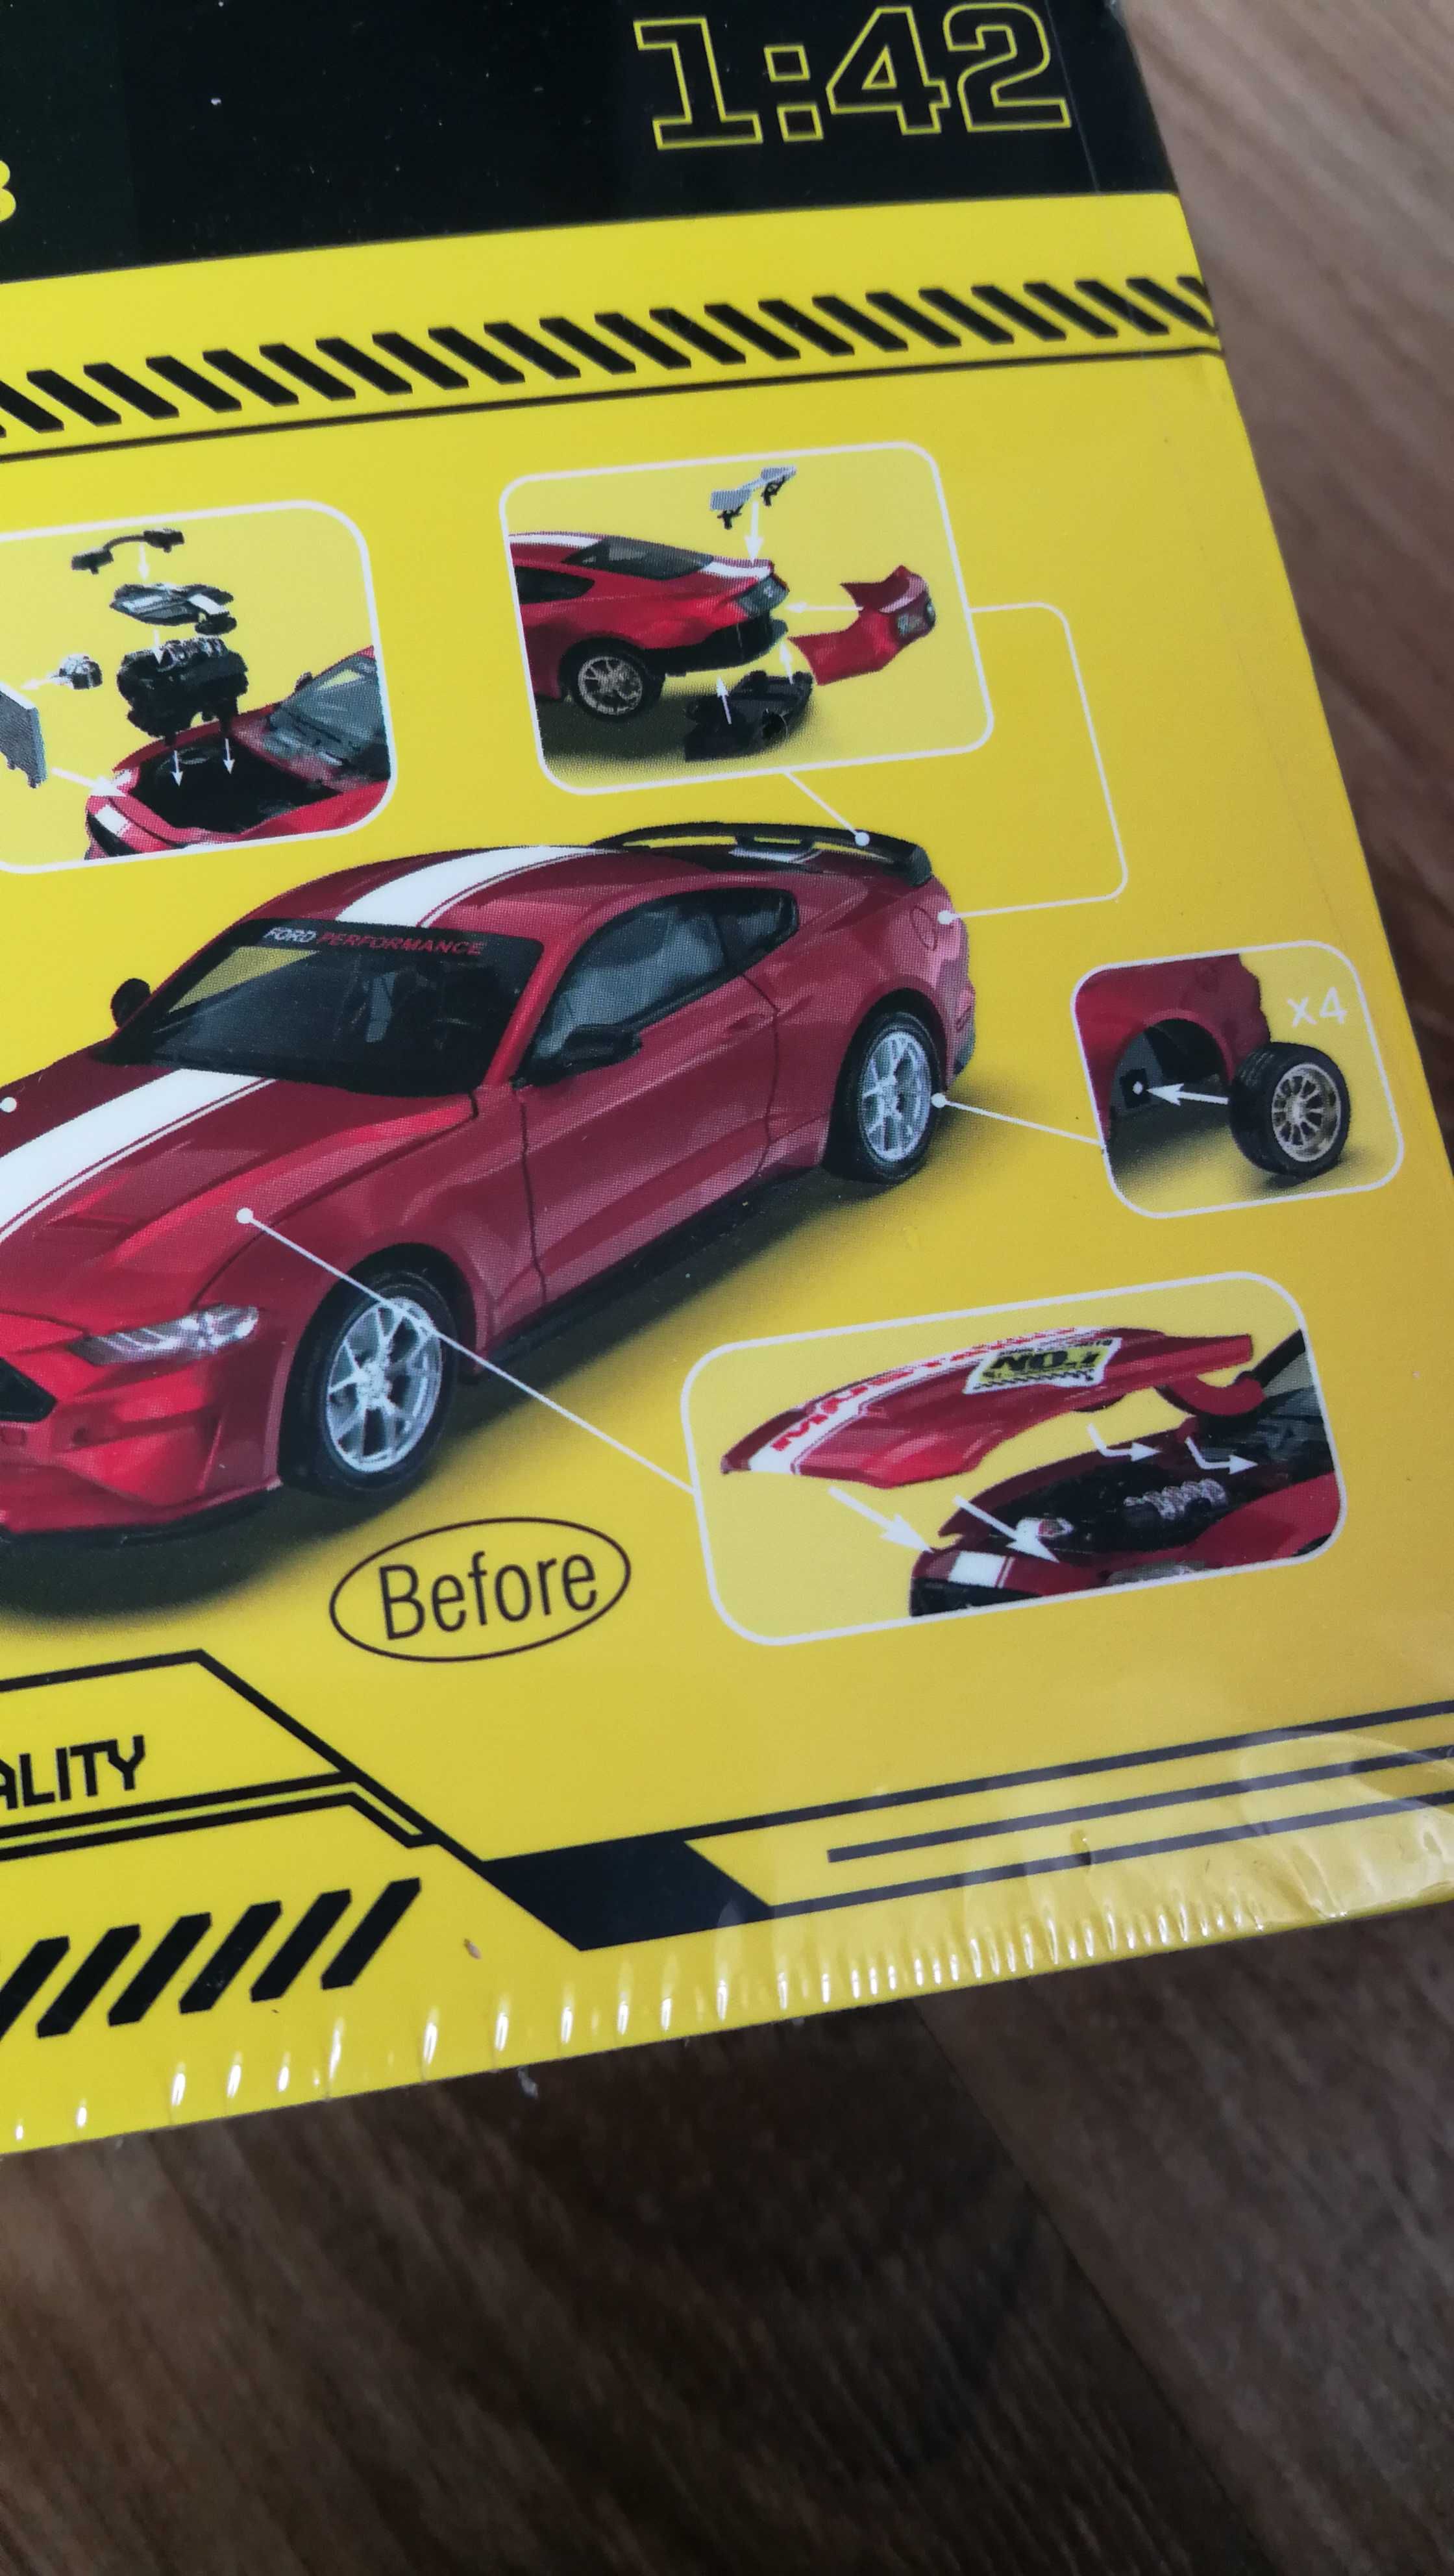 1:42 2018 Ford Mustang GT samochodzik-zabawka ze stopu metali